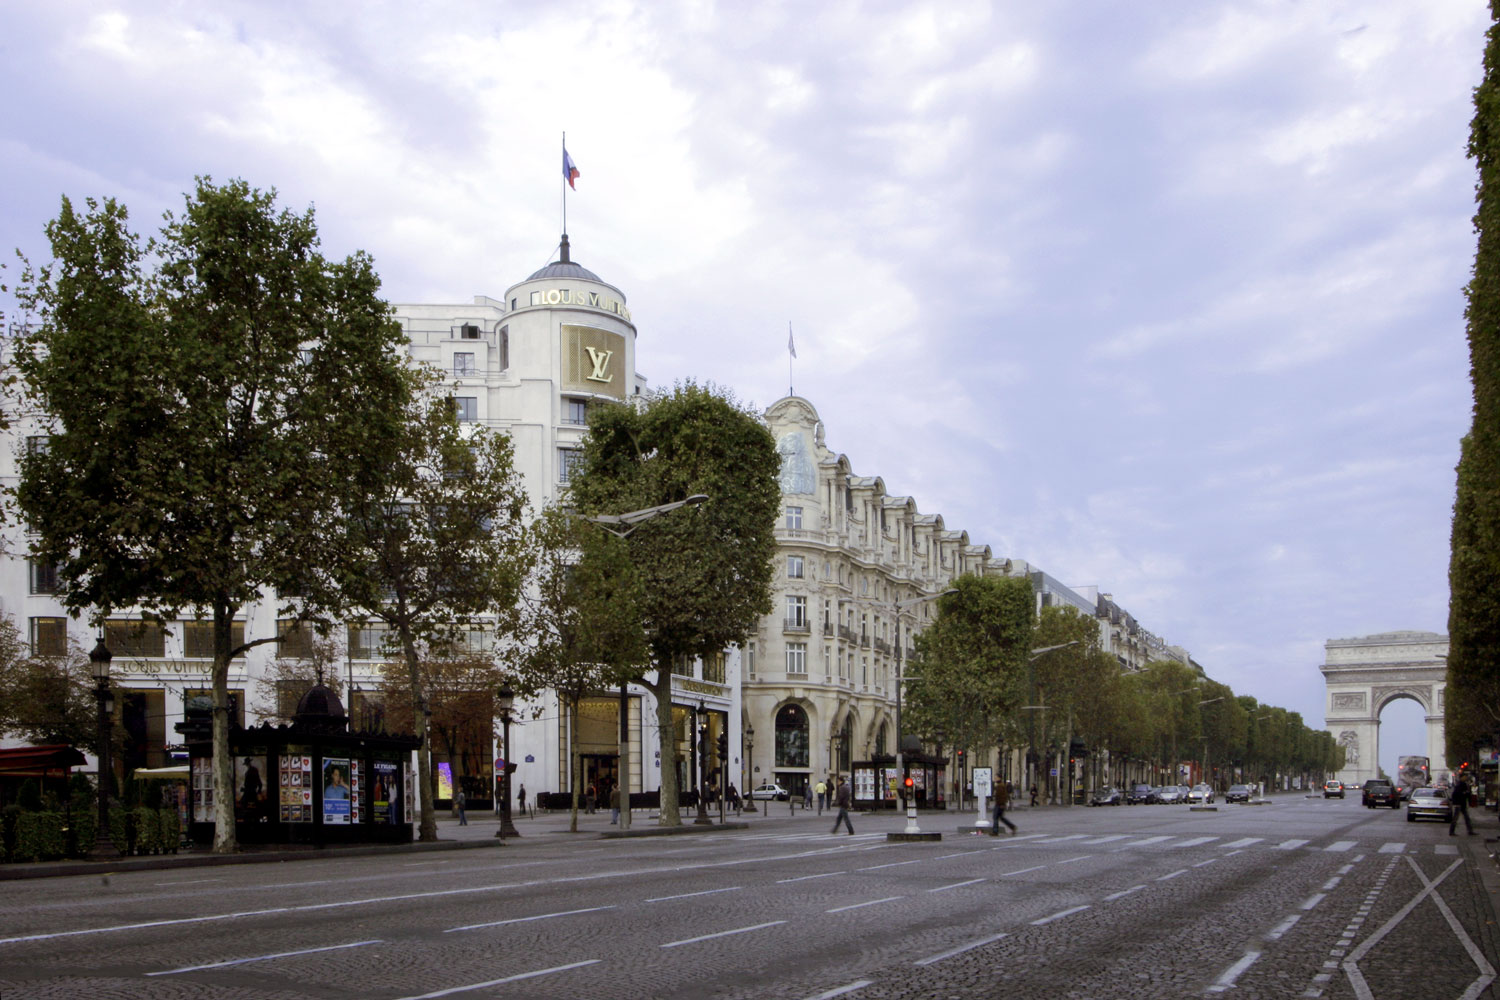 Louis Vuitton-Champs Elysee, Louie, Louie, Louie, Louiee